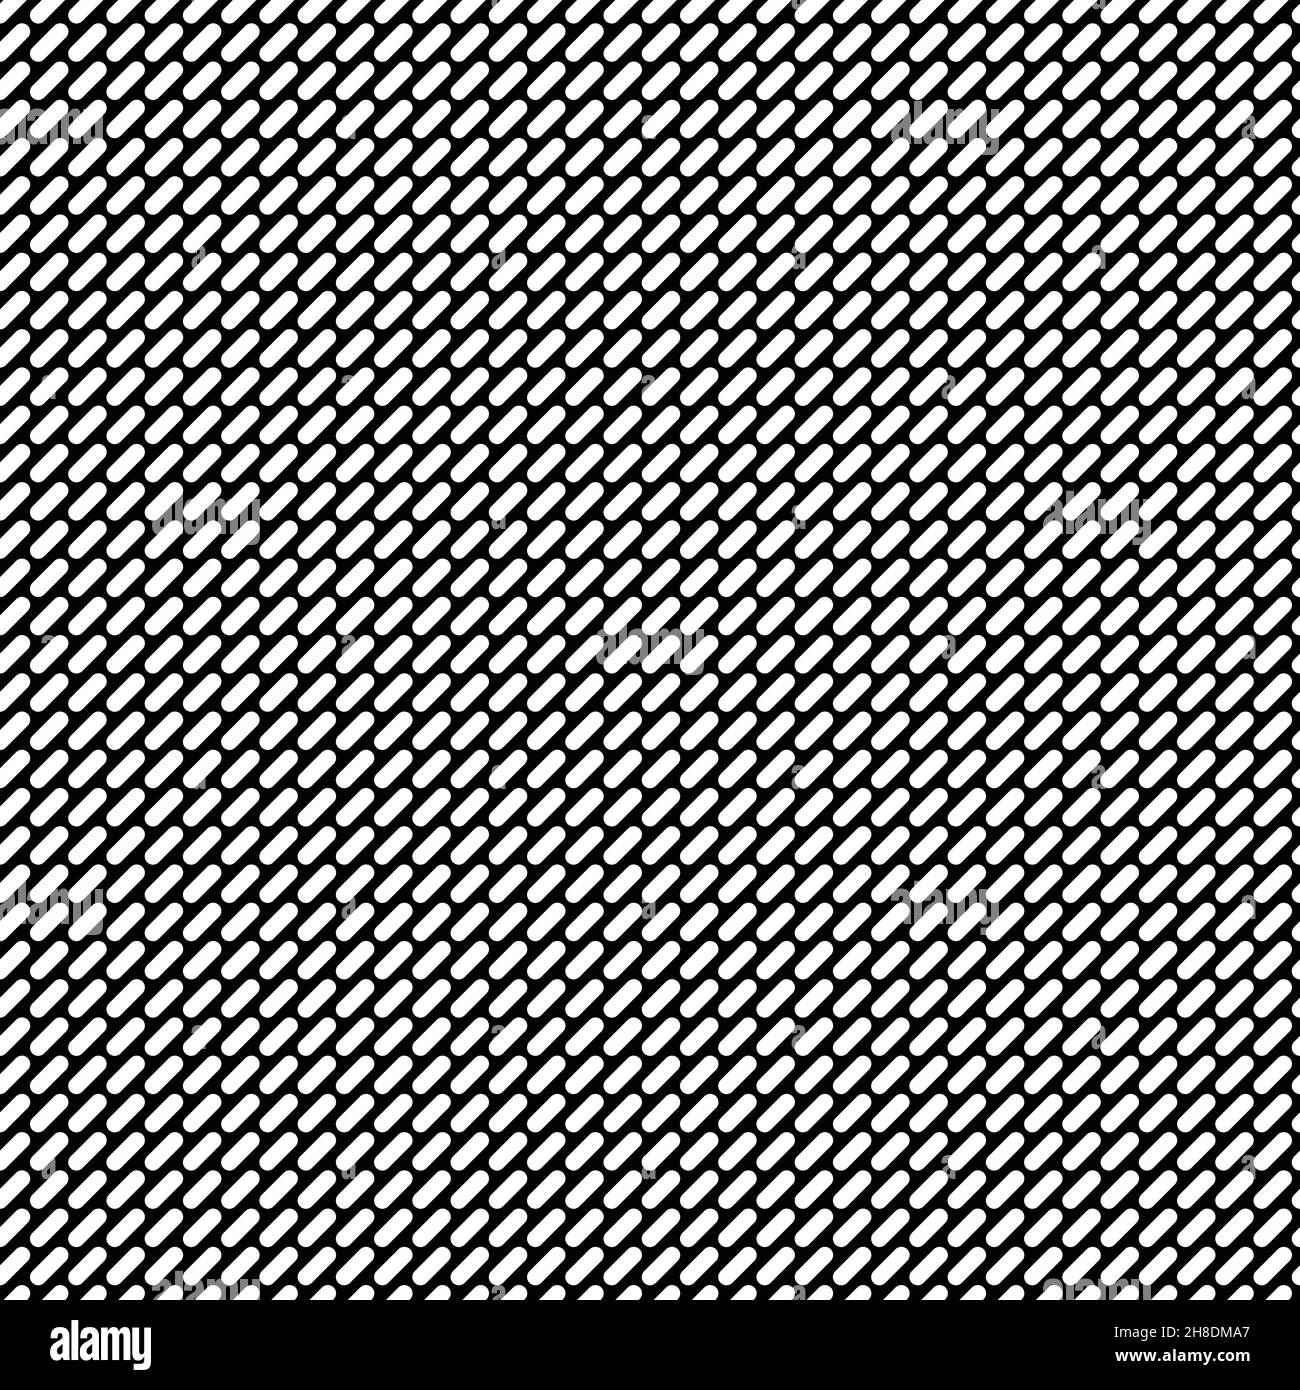 Diagonale gestrichelte Linien. Nahtlose Schwarz-Weiß-Textur. Vektorbild. Ideal für Texturen und textile Projekte. Stock Vektor